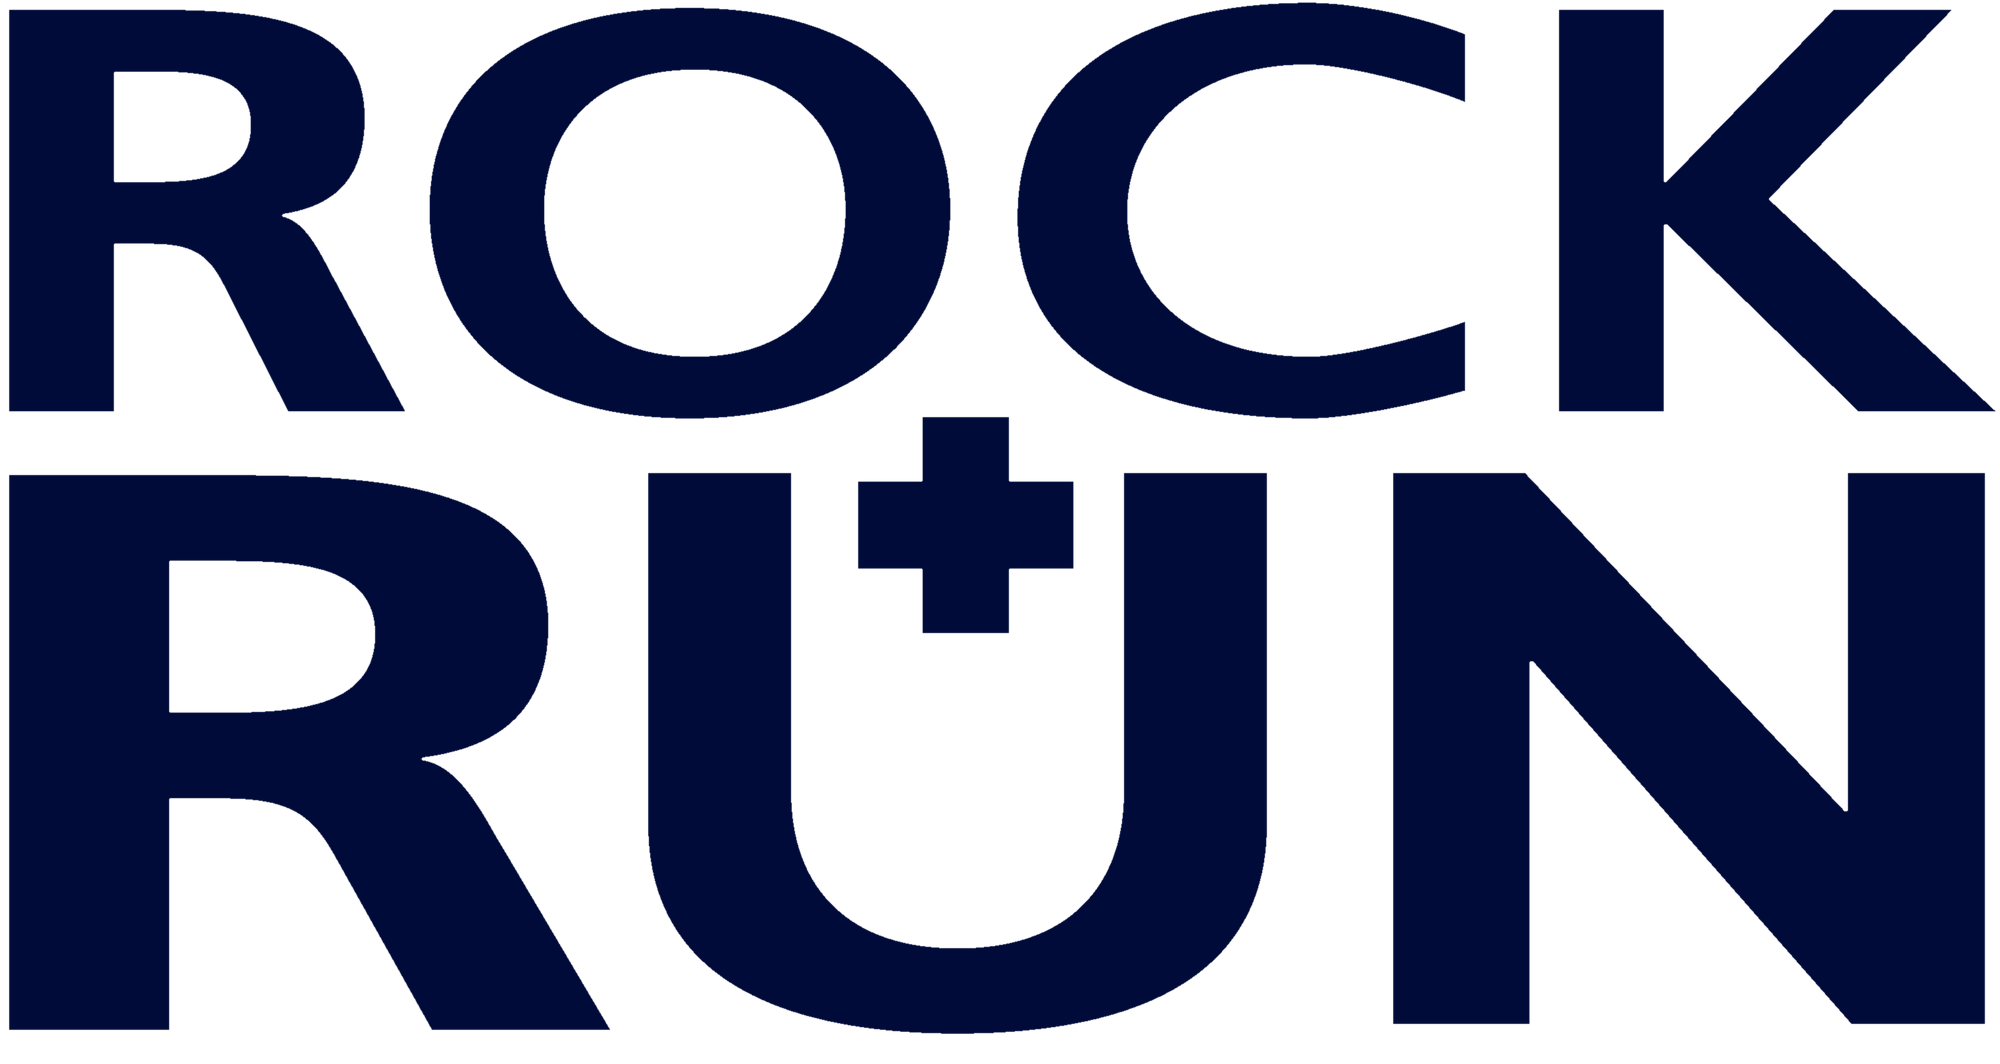 Rock + Run Logo